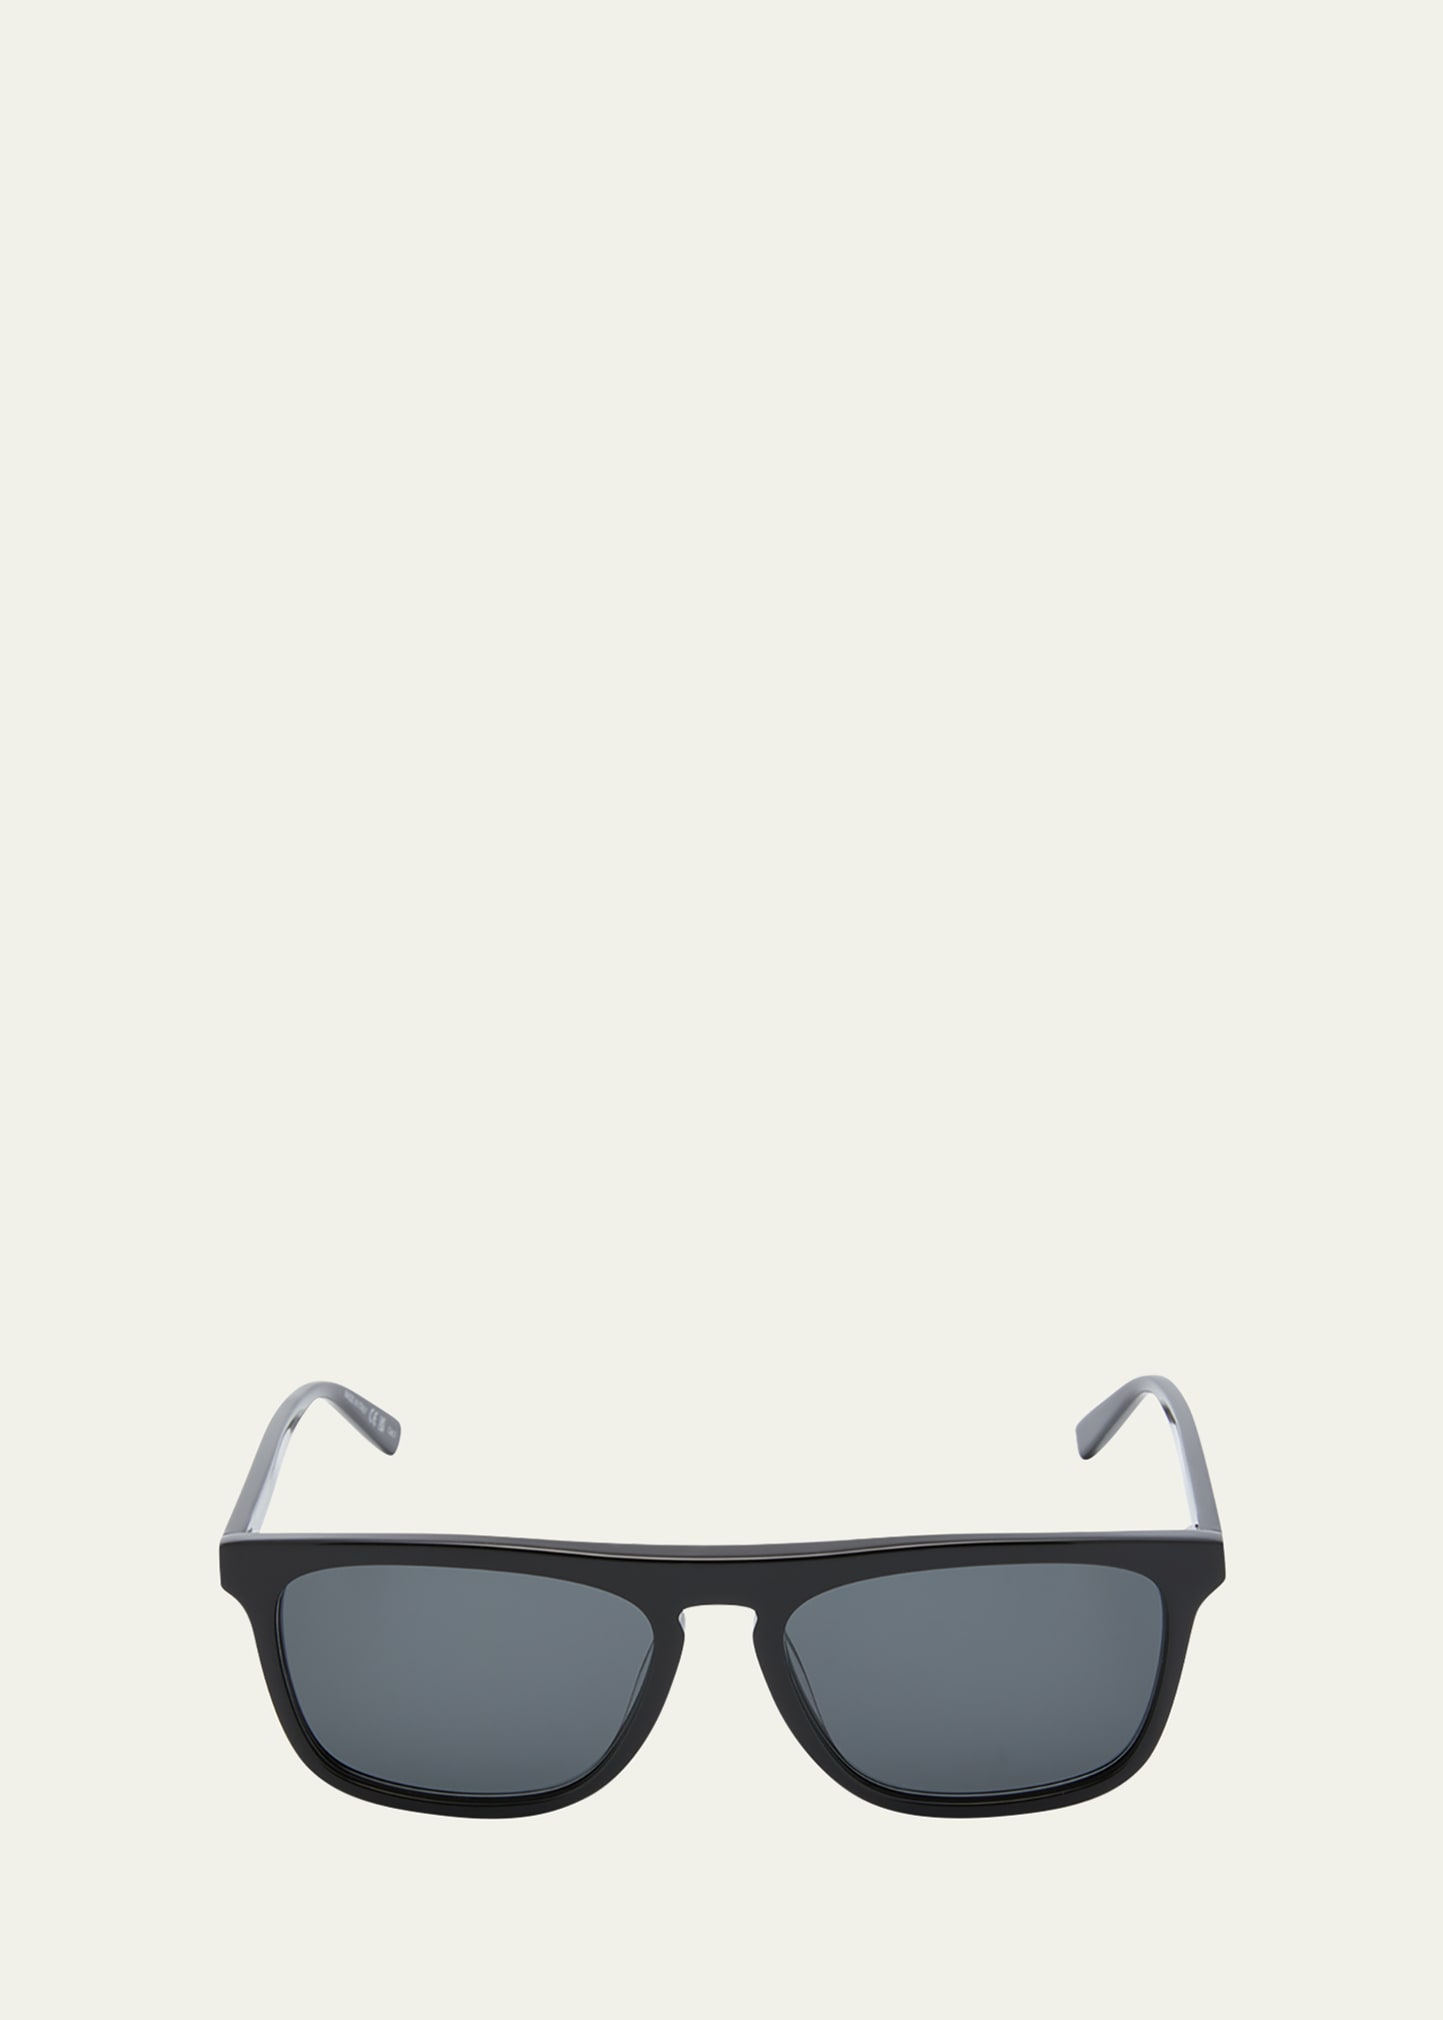 Saint Laurent 56mm Polarized Square Sunglasses In Black